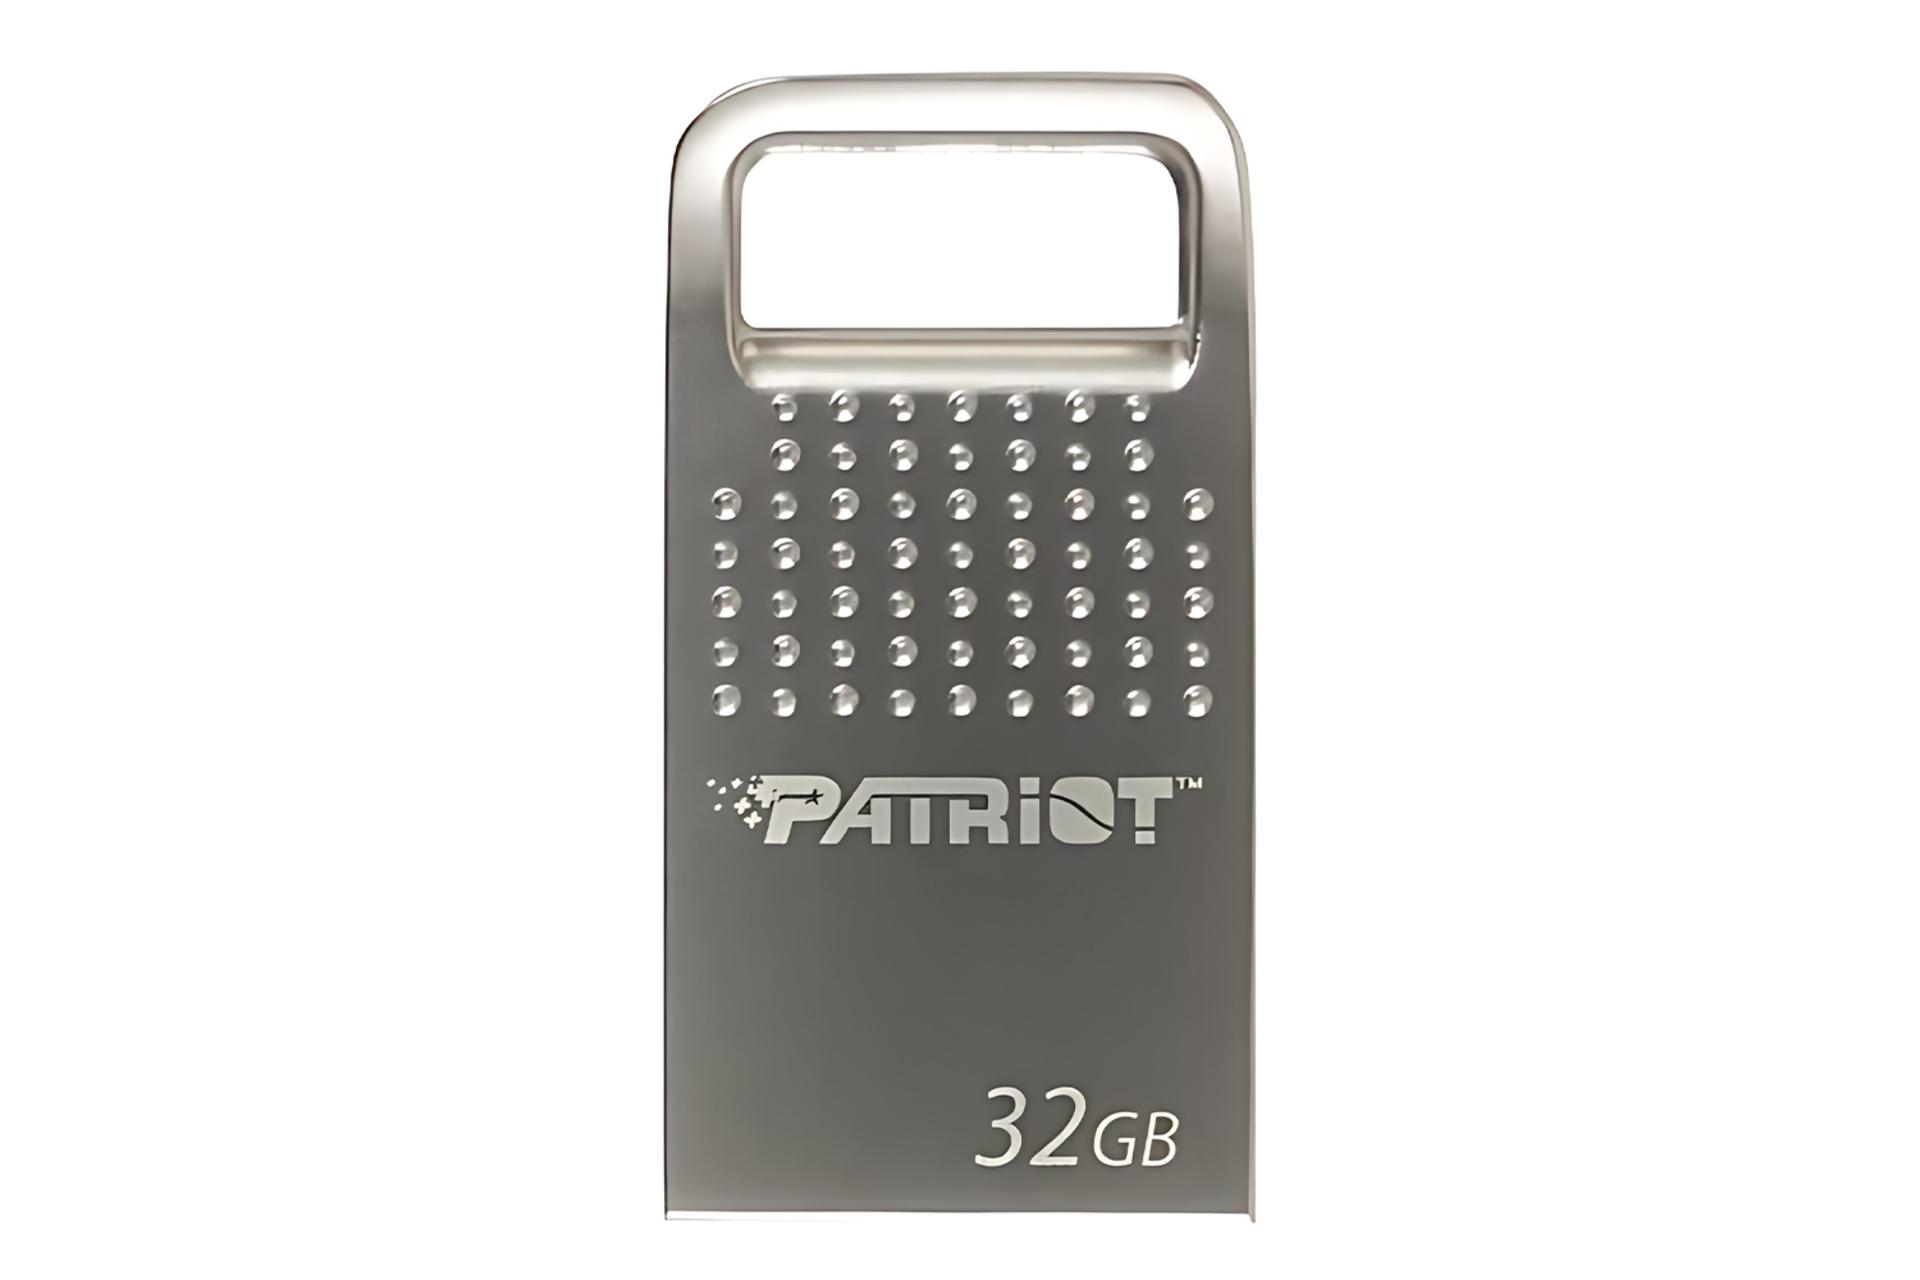 فلش مموری پاتریوت Patriot TAB200 32GB USB 2.0